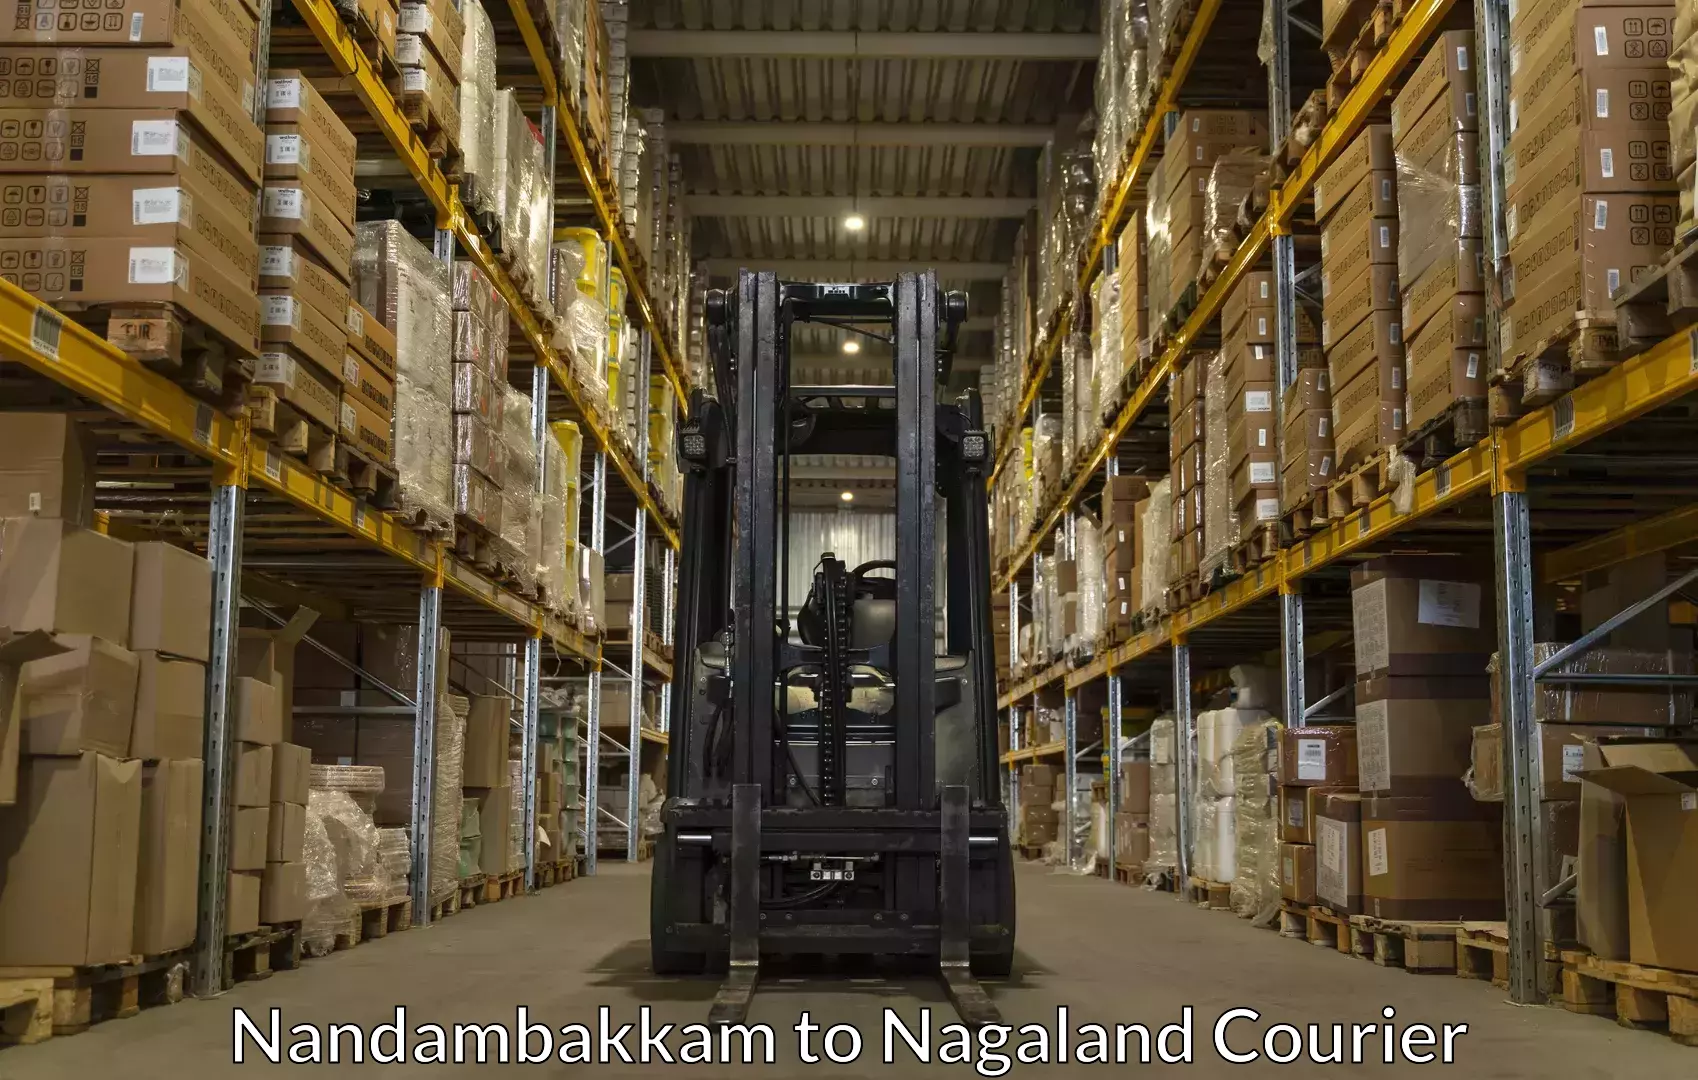 Baggage shipping quotes Nandambakkam to NIT Nagaland